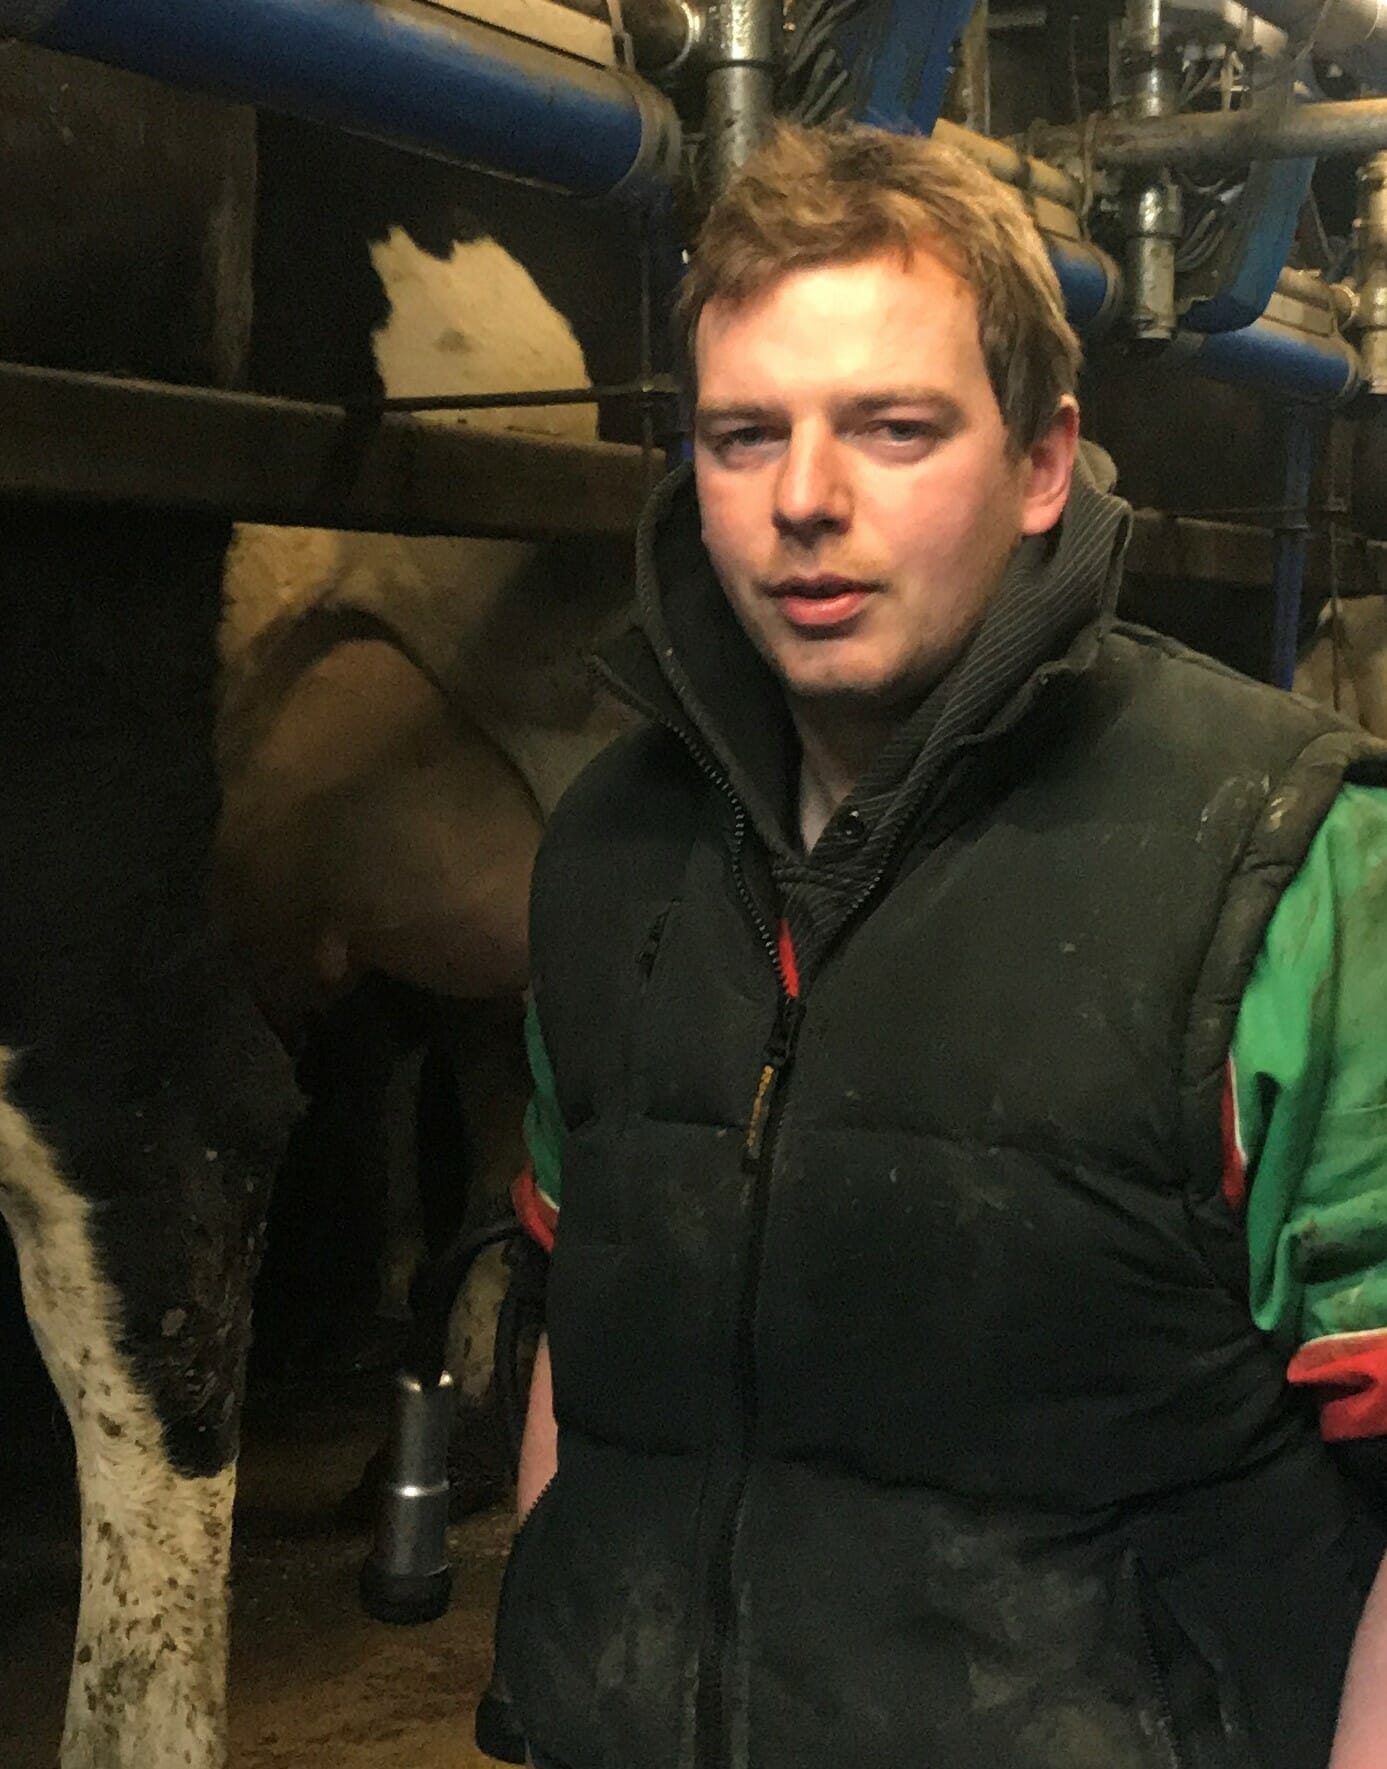 Dairy Farmer and Milk Producer, Alan Richard